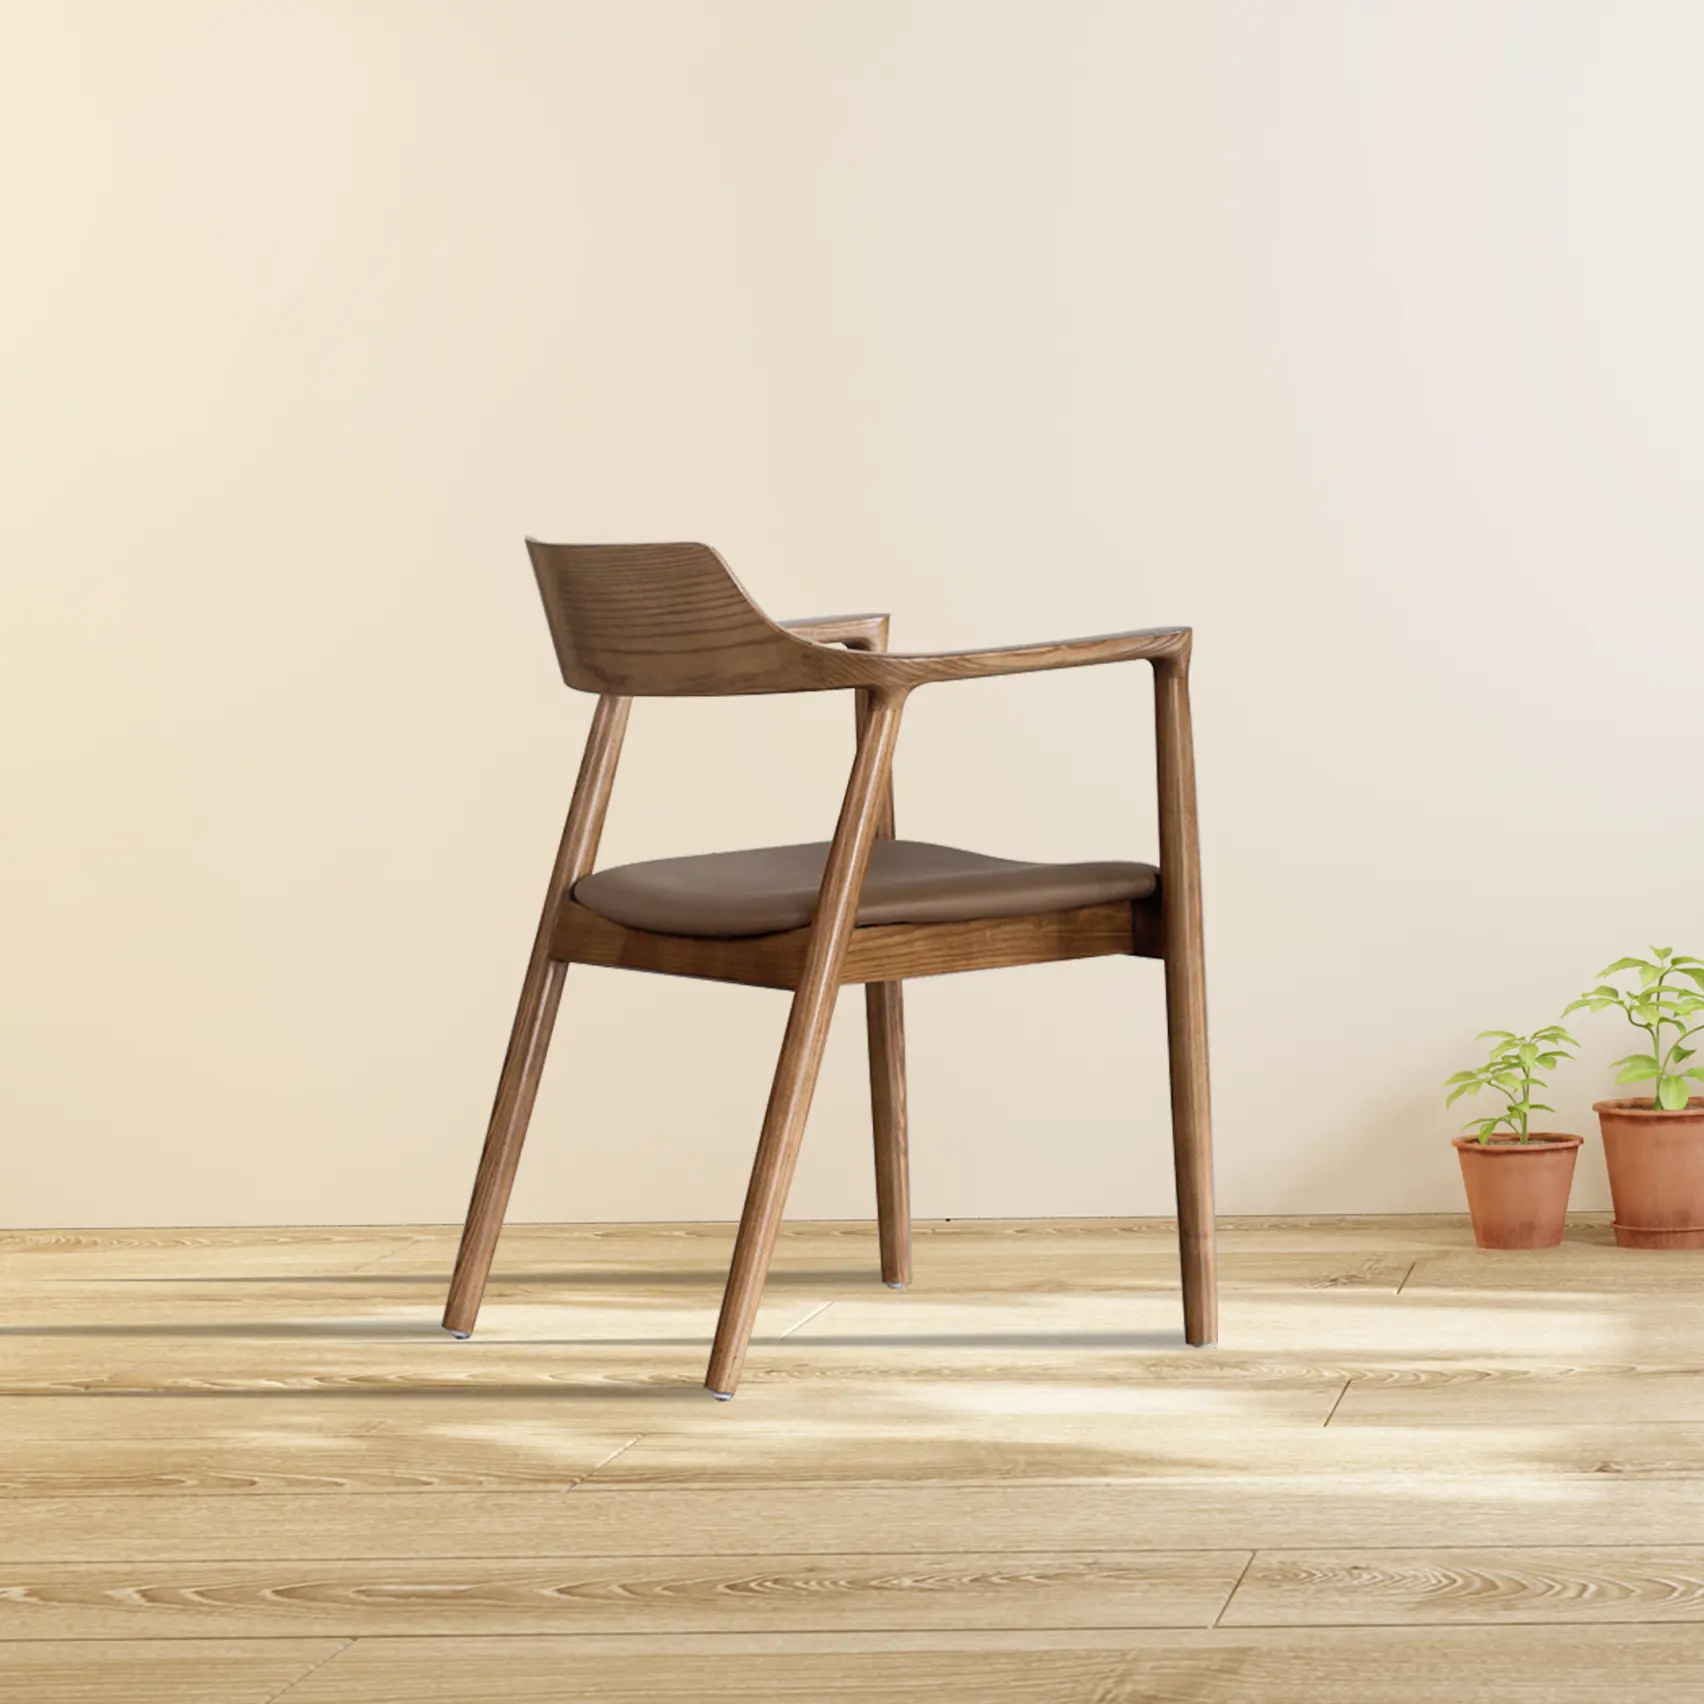 Cadeira de madeira maciça moderna e simples para móveis de lazer, sala de estar, quarto, cadeira de hotel, design de alta qualidade, venda imperdível